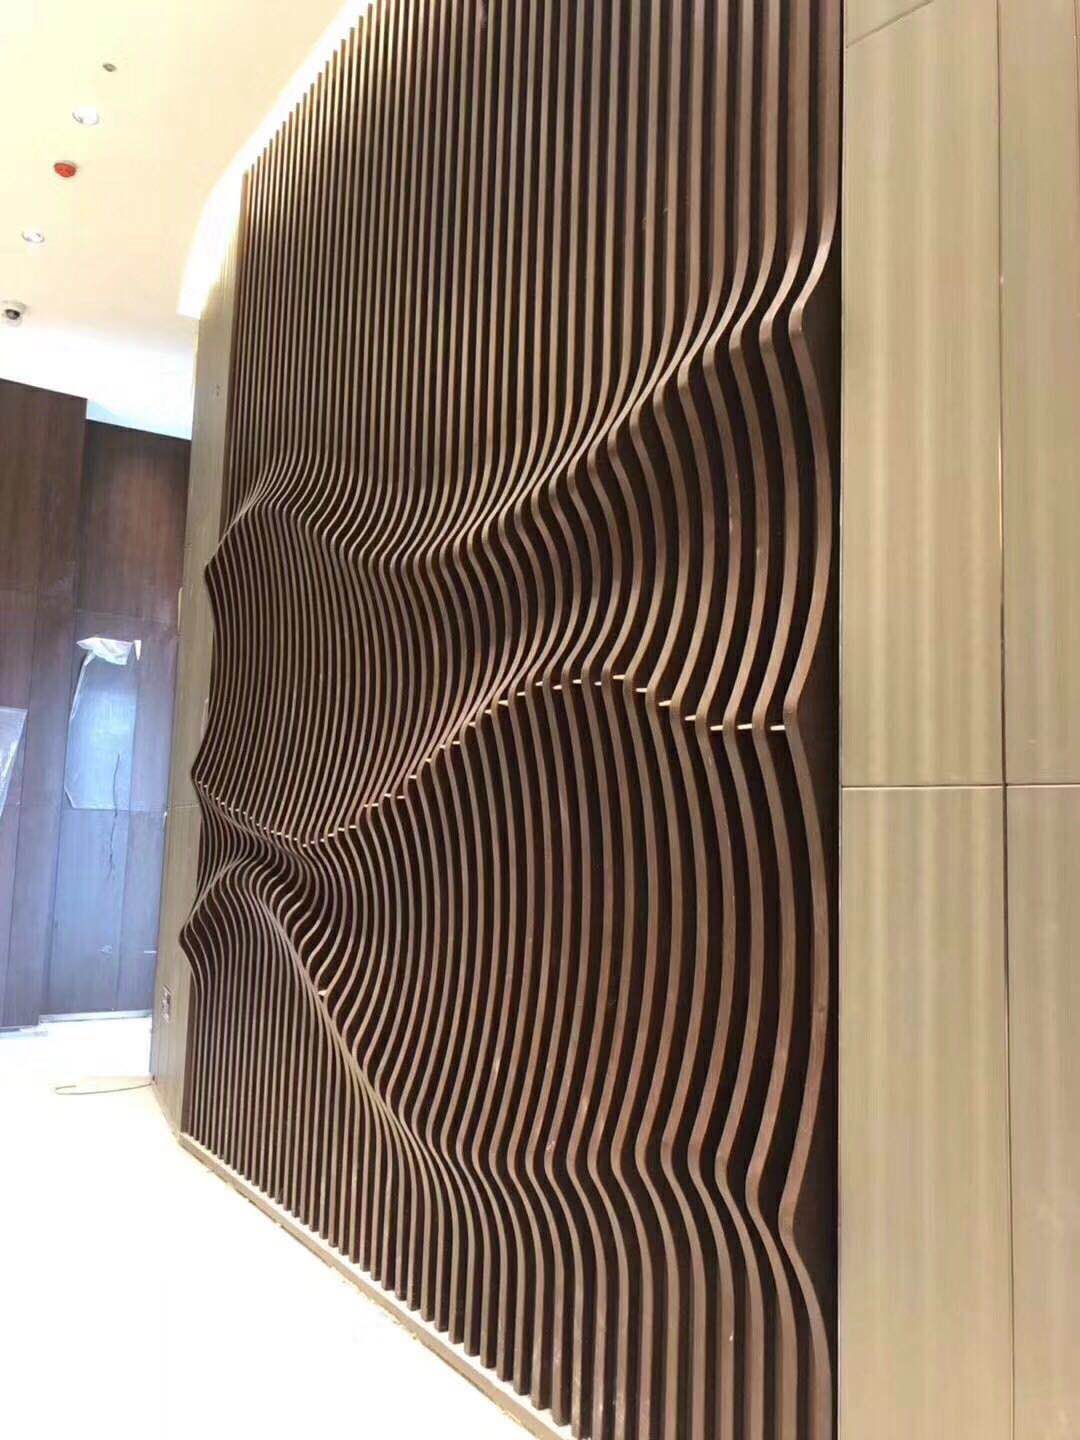 佛山市木纹曲面墙身铝板假山造型园林铝板设计厂家木纹曲面墙身铝板假山造型园林铝板设计